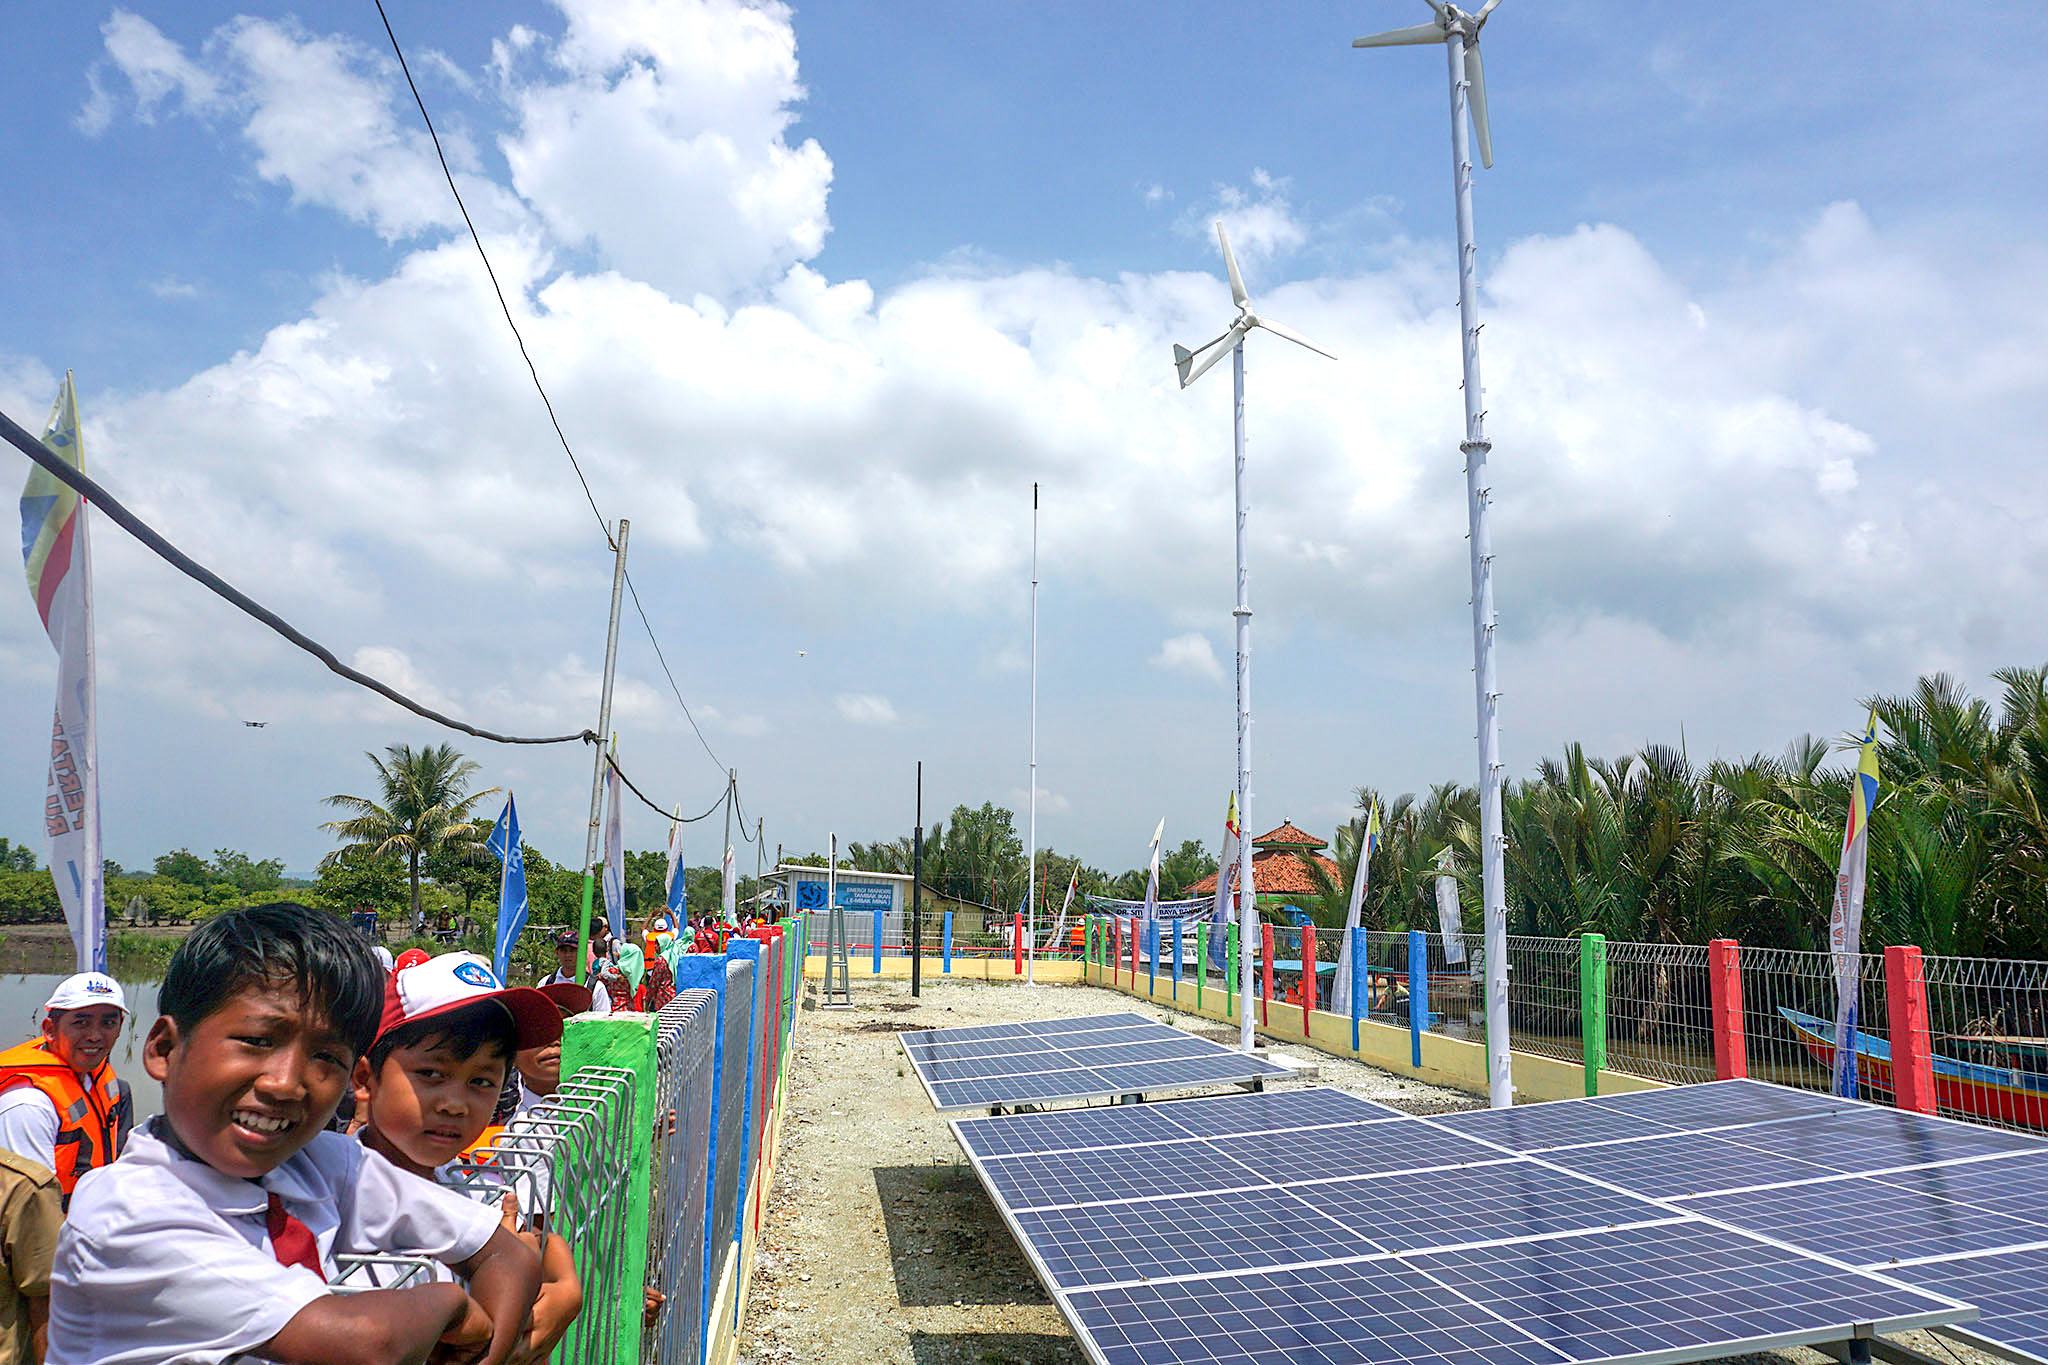 Sebagai daerah terpencil, Dusun Bondan, Desa Ujung Alang, Kecamatan Kampung Laut, Cilacap menggunakan pembangkit listrik surya dan bayu untuk memenuhi kebutuhan energi listrik sehari-hari | Foto: L Darmawan/Mongabay Indonesia